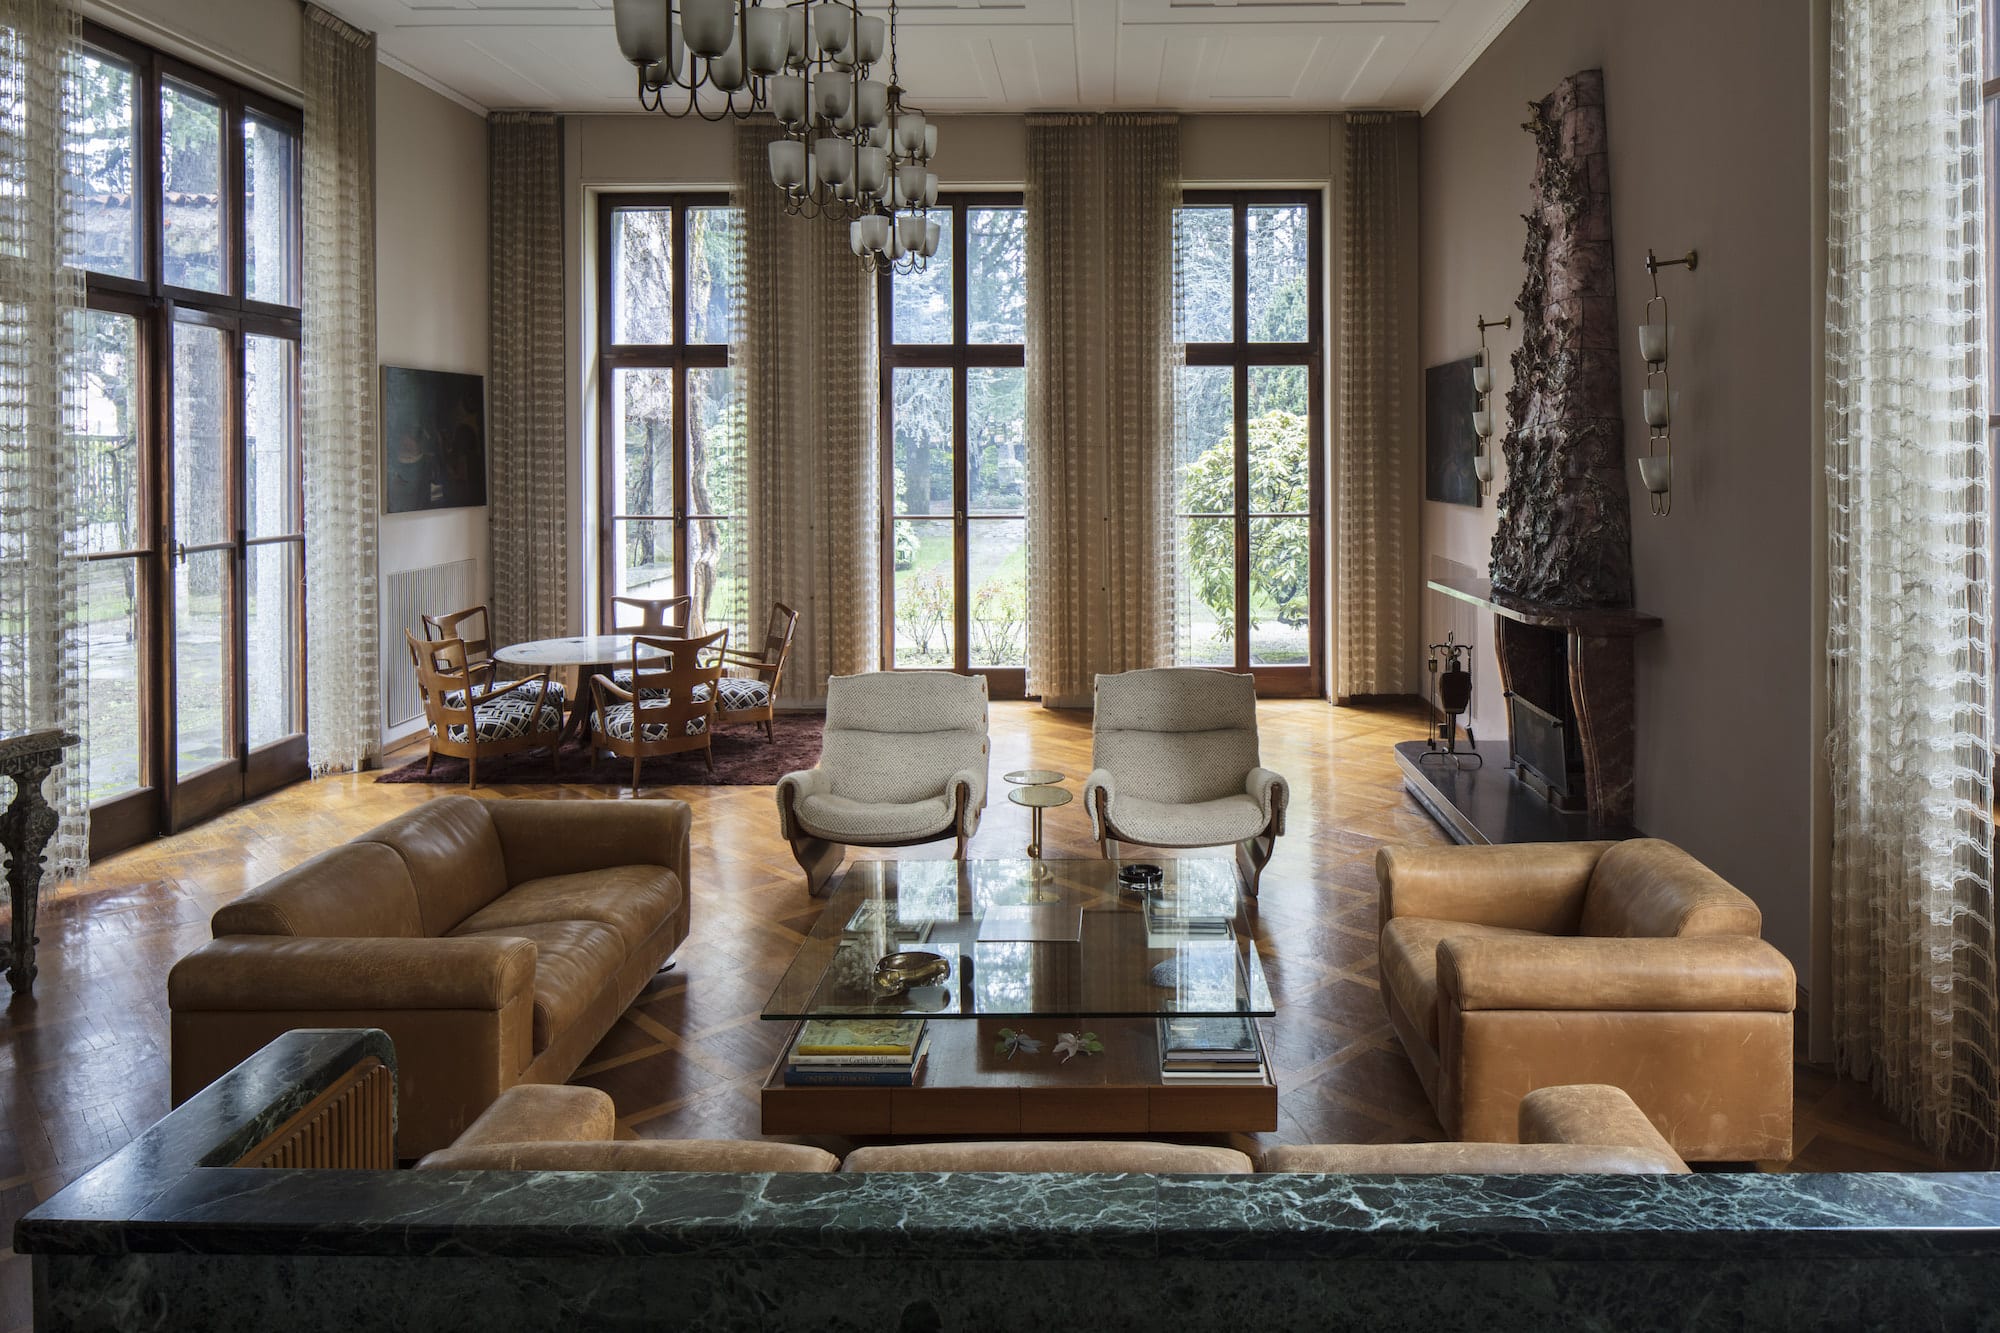 The sunken living room of Villa Borsani